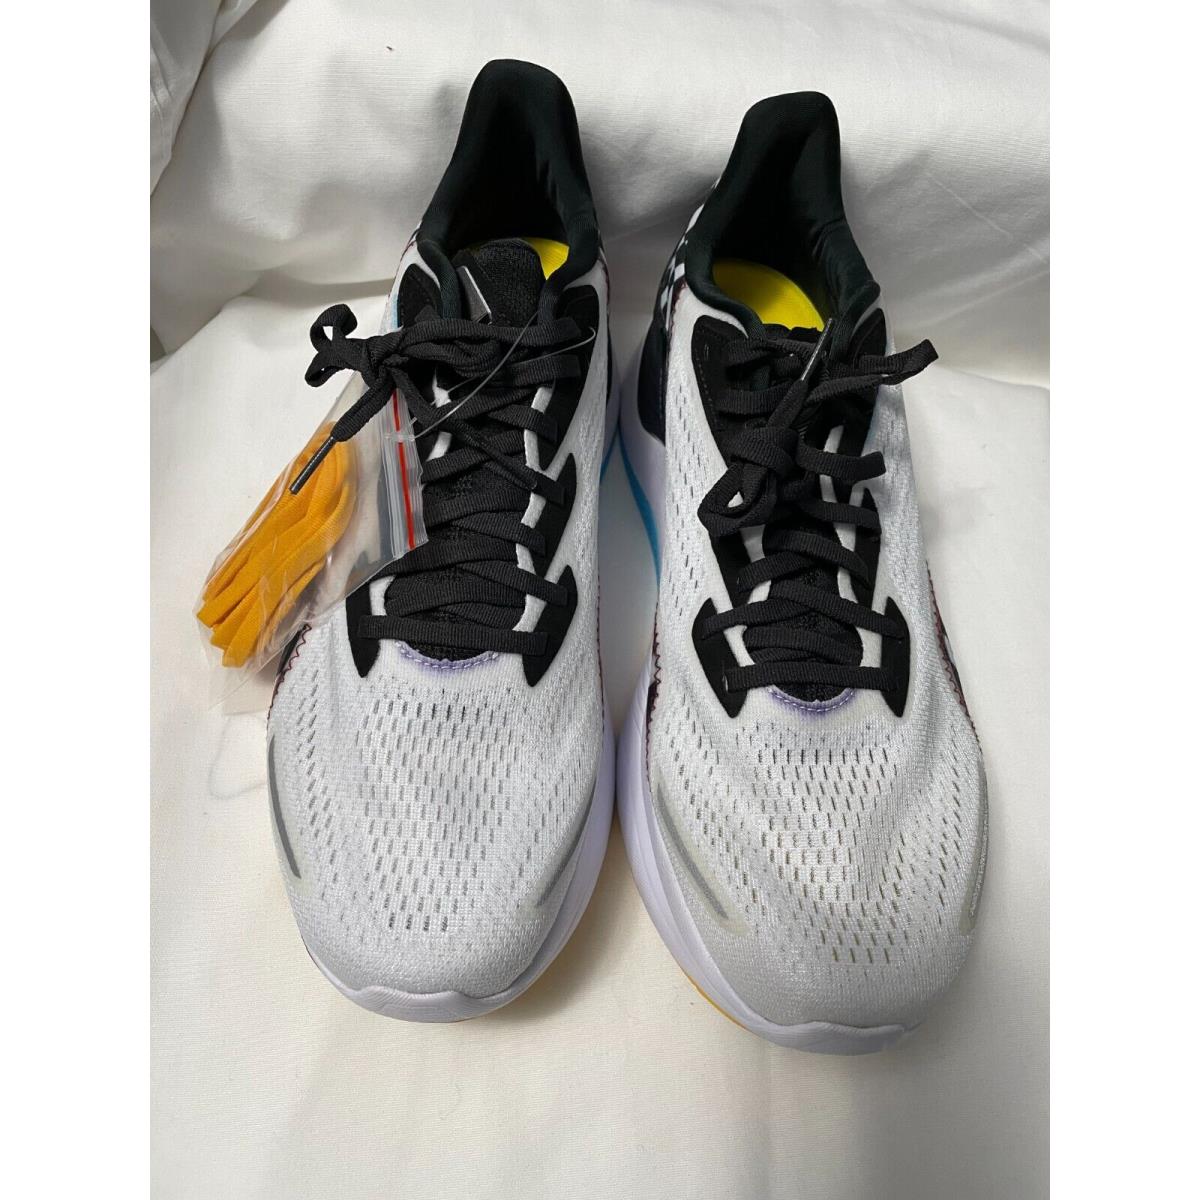 Saucony Endorphin Shift 2 Running Shoes Mens 11.5 Reverie White Black S20689-40